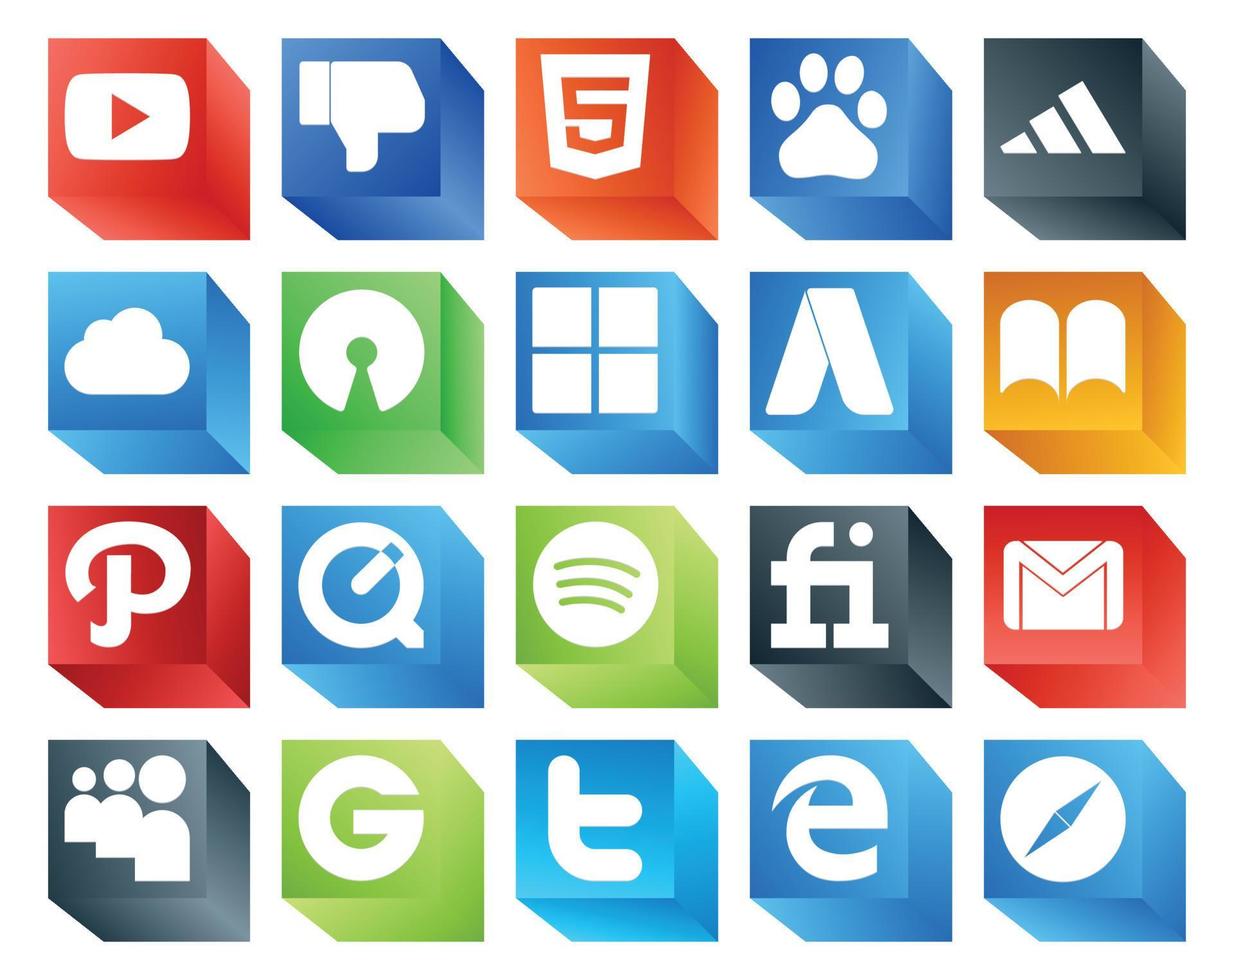 20 Symbolpakete für soziale Medien, einschließlich E-Mail, Google Mail, Microsoft Fiverr, QuickTime vektor